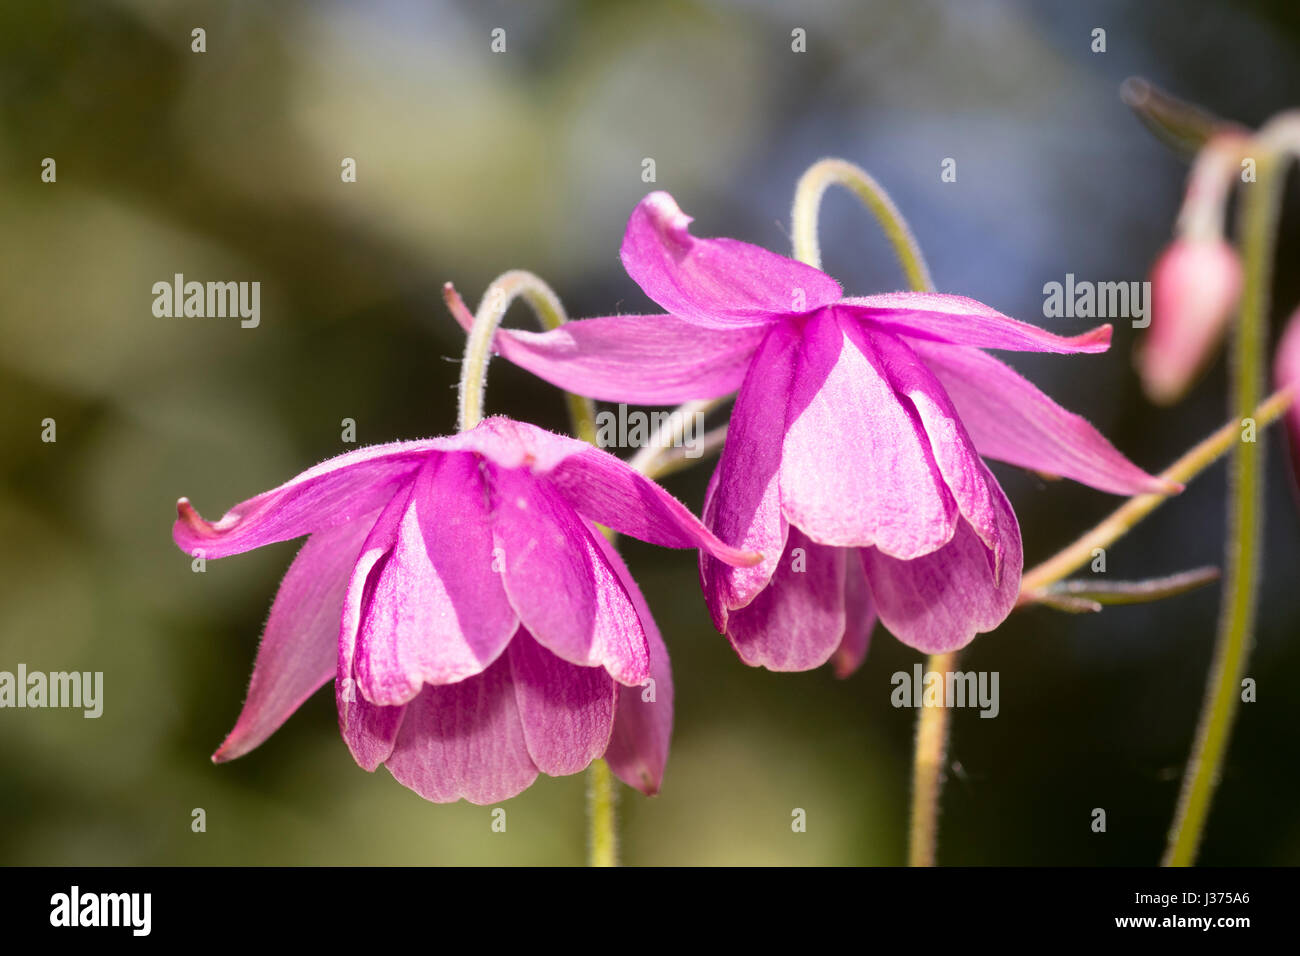 Nodding violet-pink spring flower of the aquilegia relative, Semiaquilegia ecalcarata 'Sugar Plum Fairy' Stock Photo